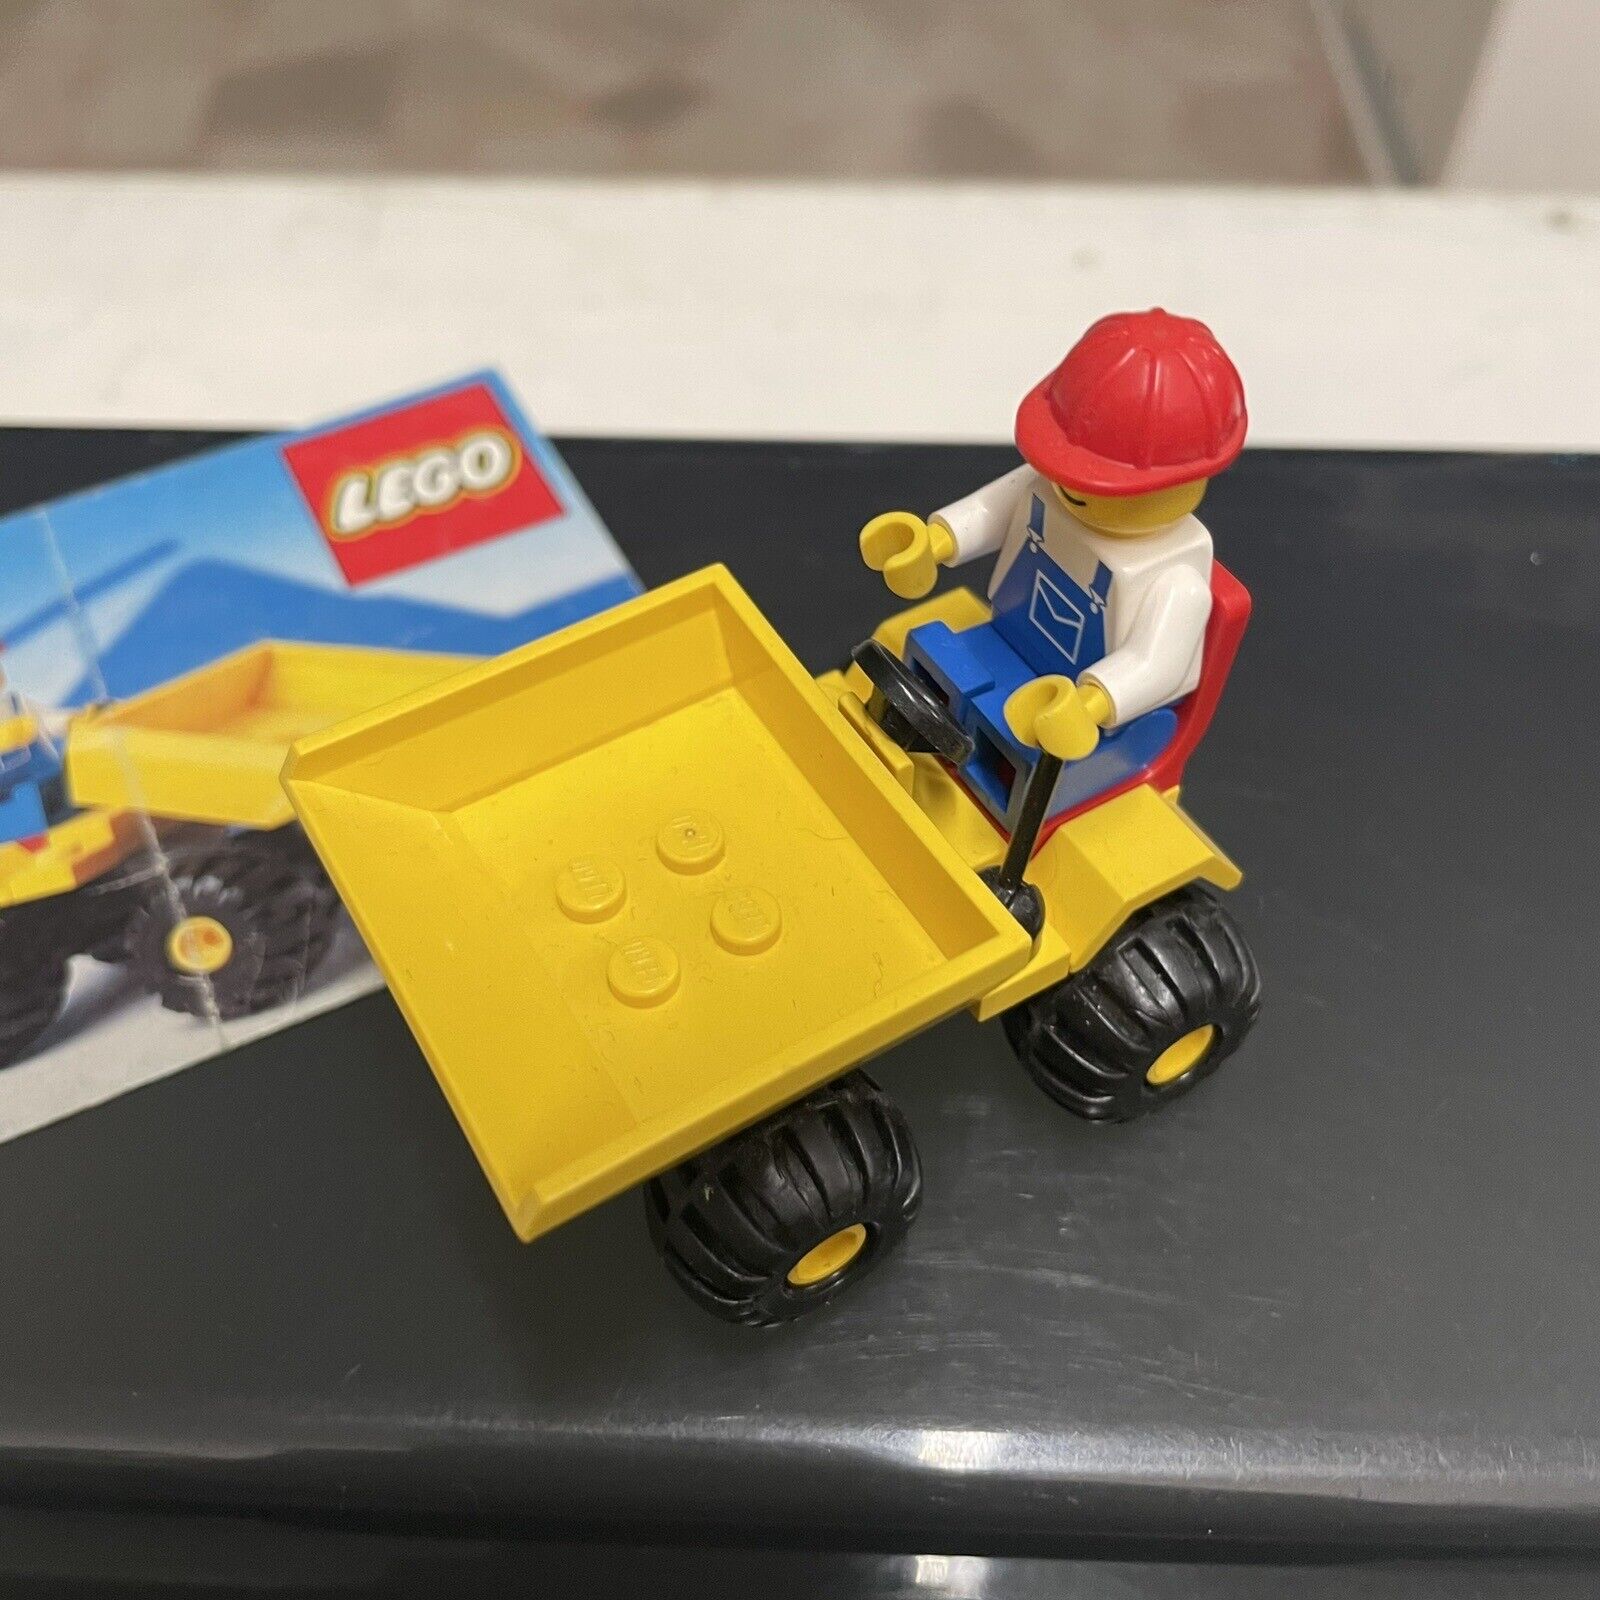 Lego-City-6507-Mini-Dumper-completo-134855726413-2